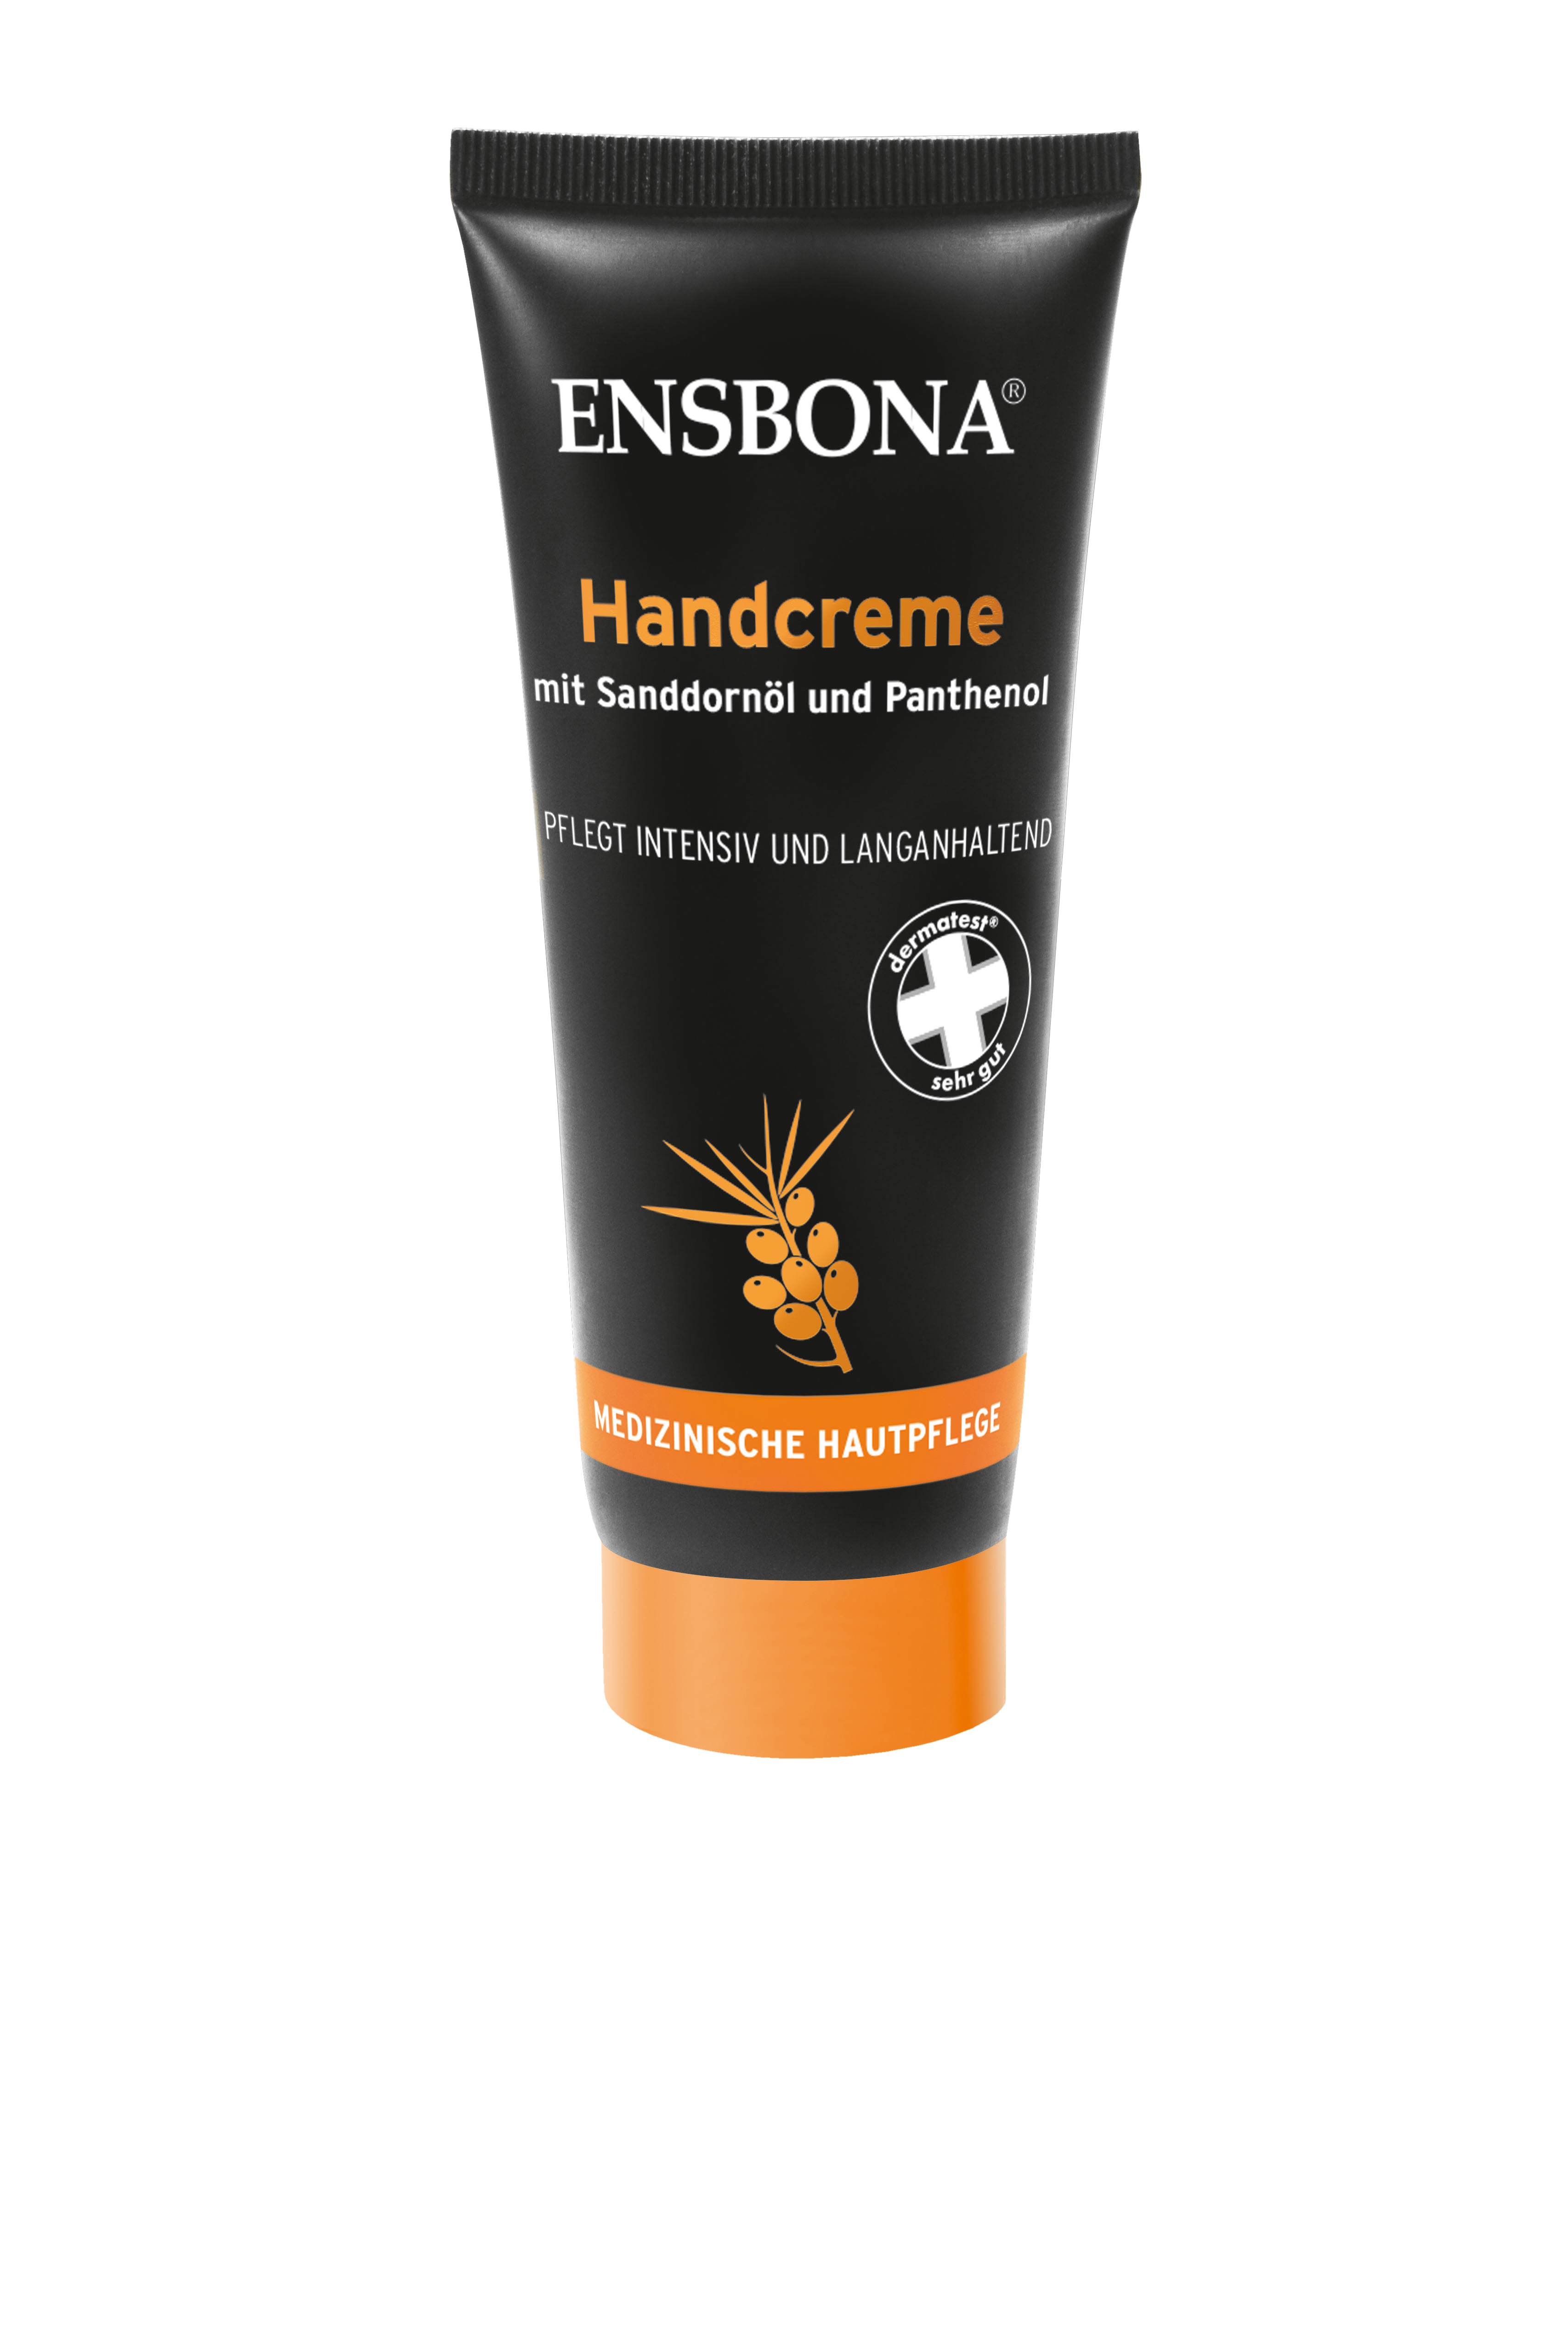 Ensbona® Handcreme mit Sanddornöl und Panthenol